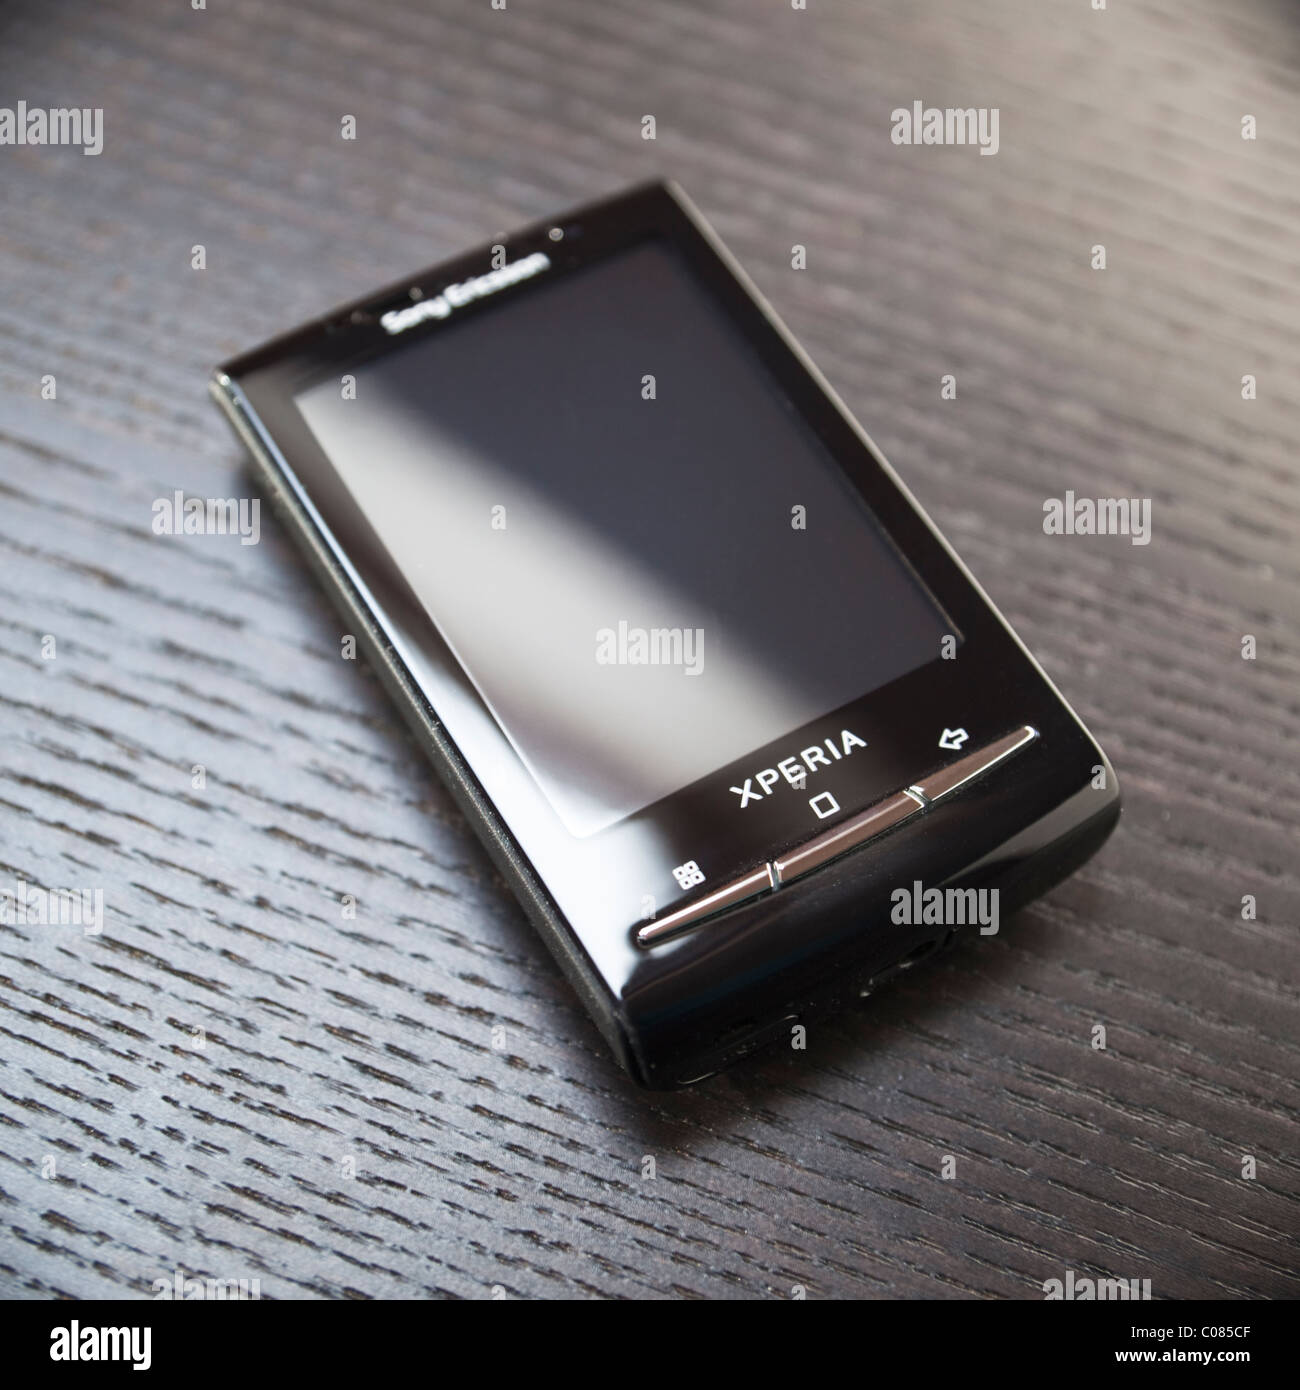 Per smartphone Android - Sony Ericsson Xperia X10 mini Foto stock - Alamy